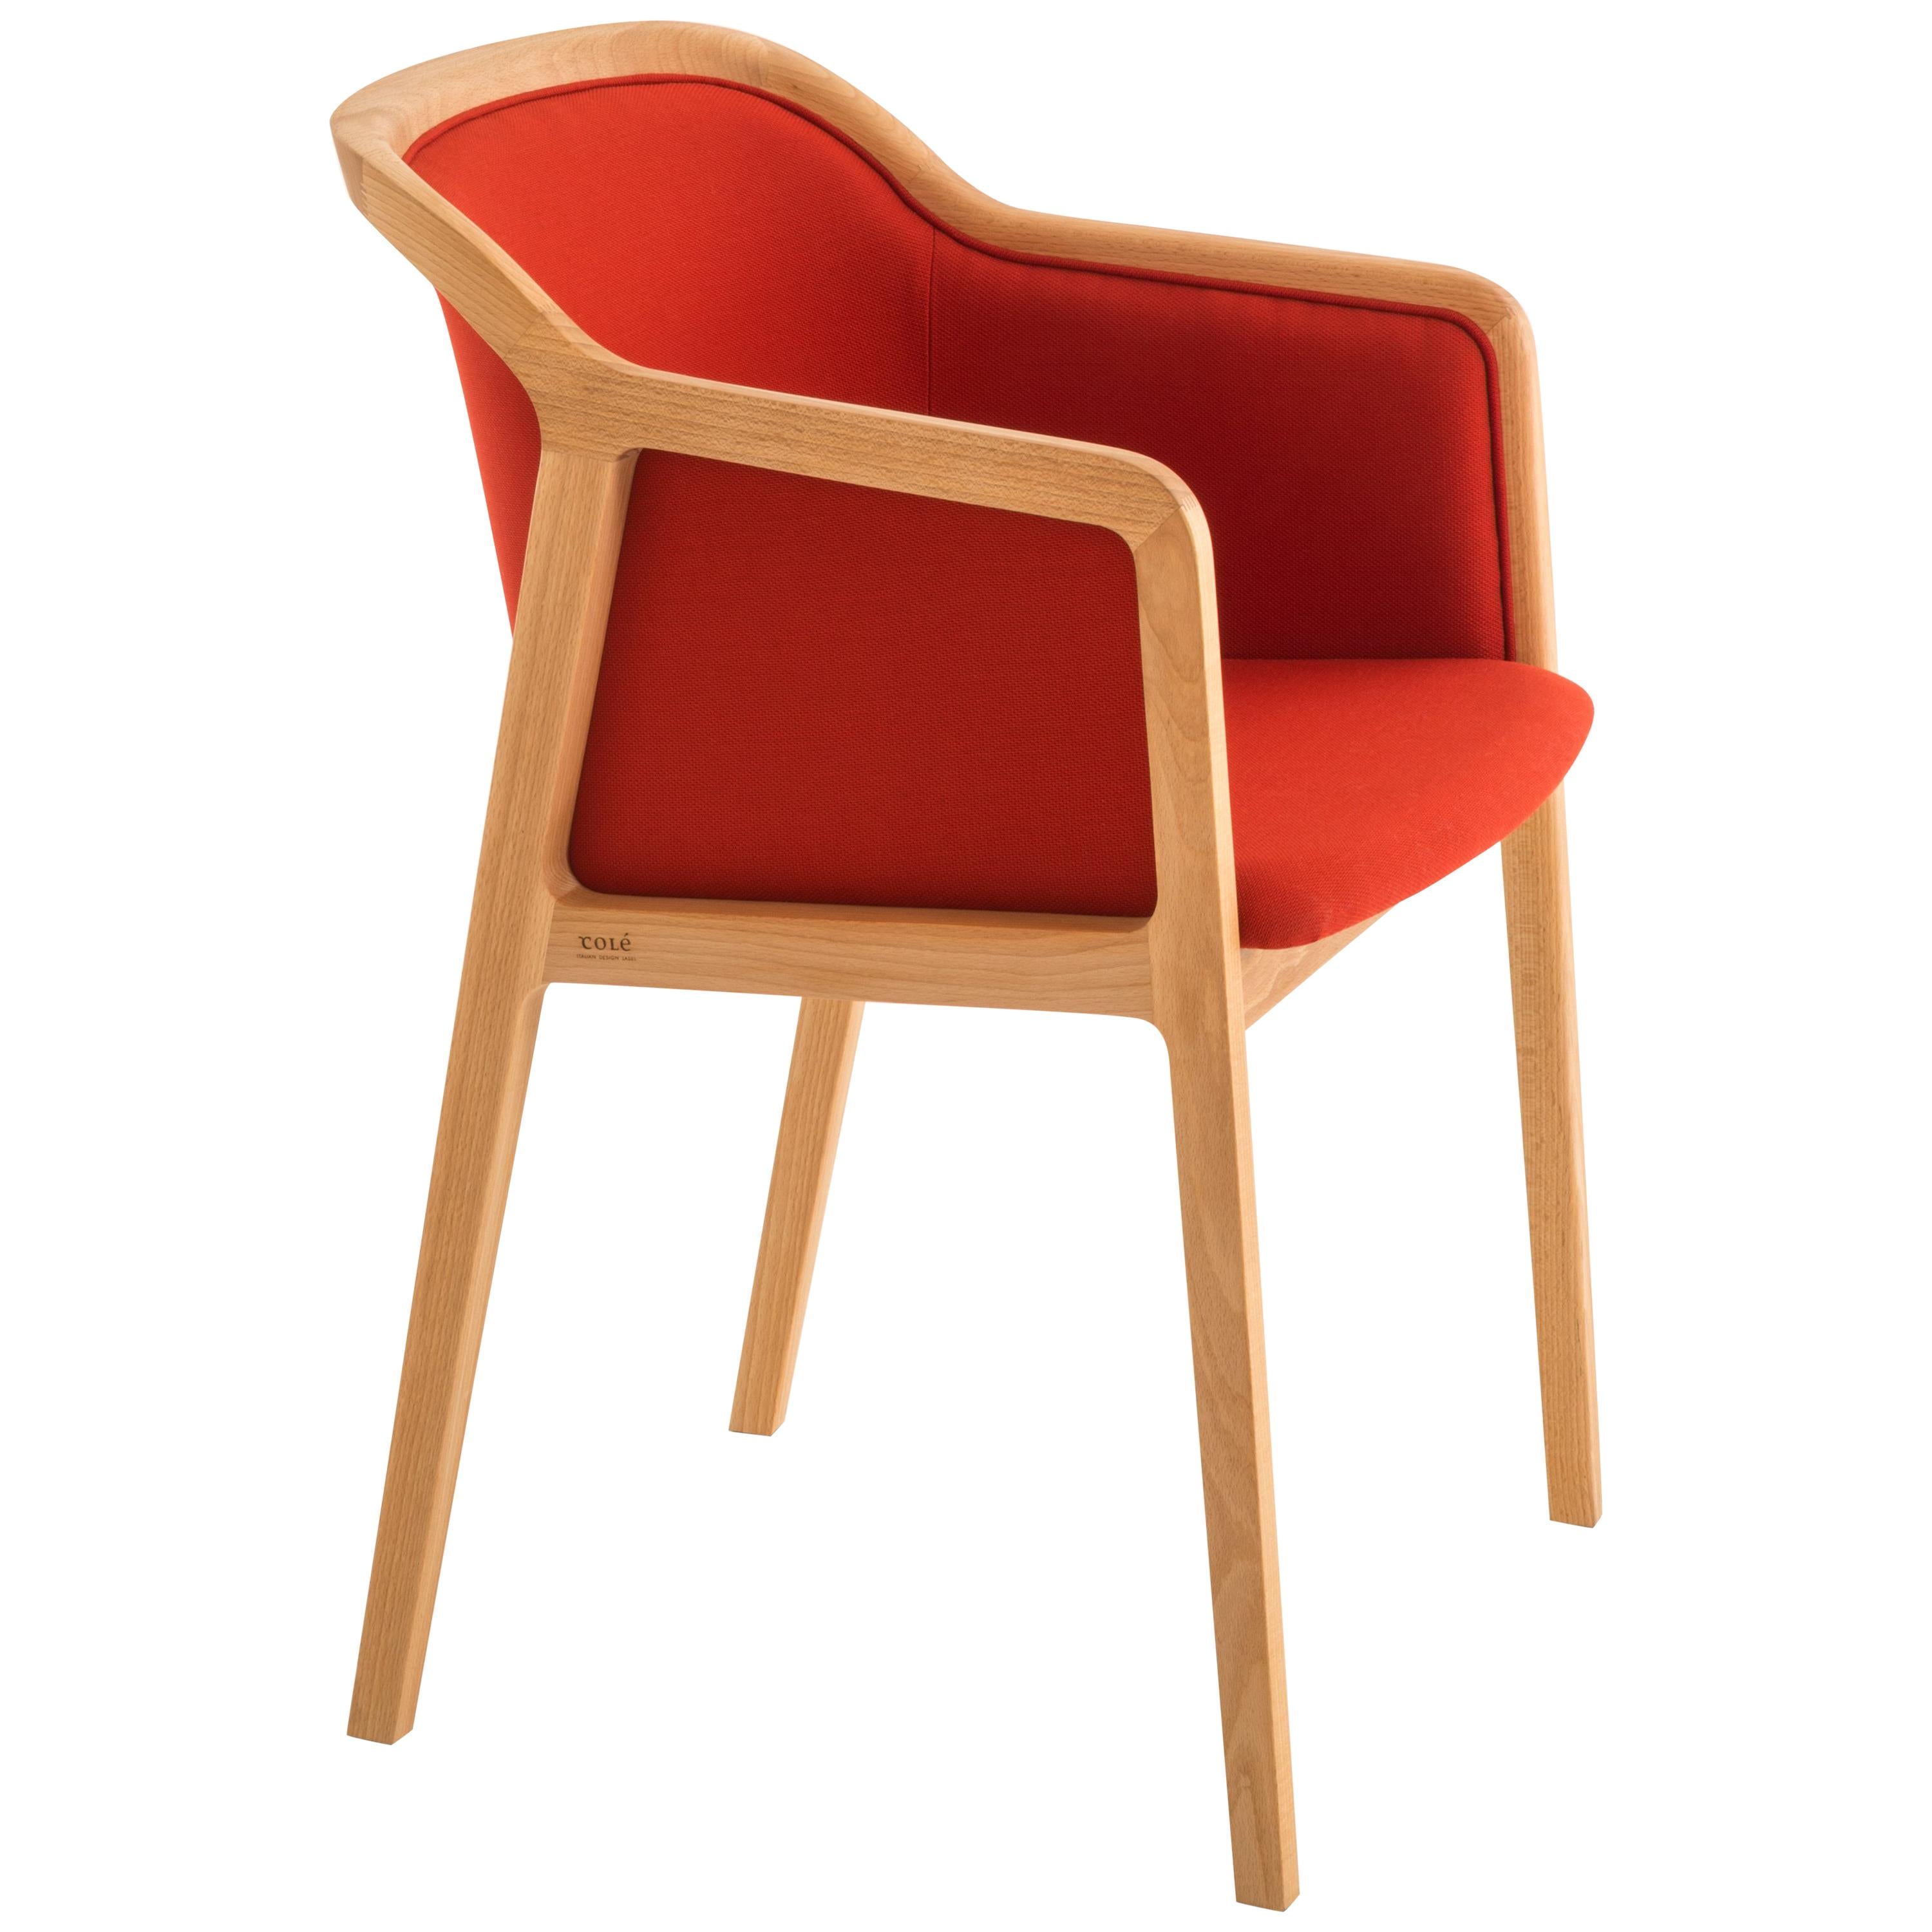 Wiener Weicher kleiner Sessel, zeitgenössisches Design inspiriert von traditionellen Stühlen